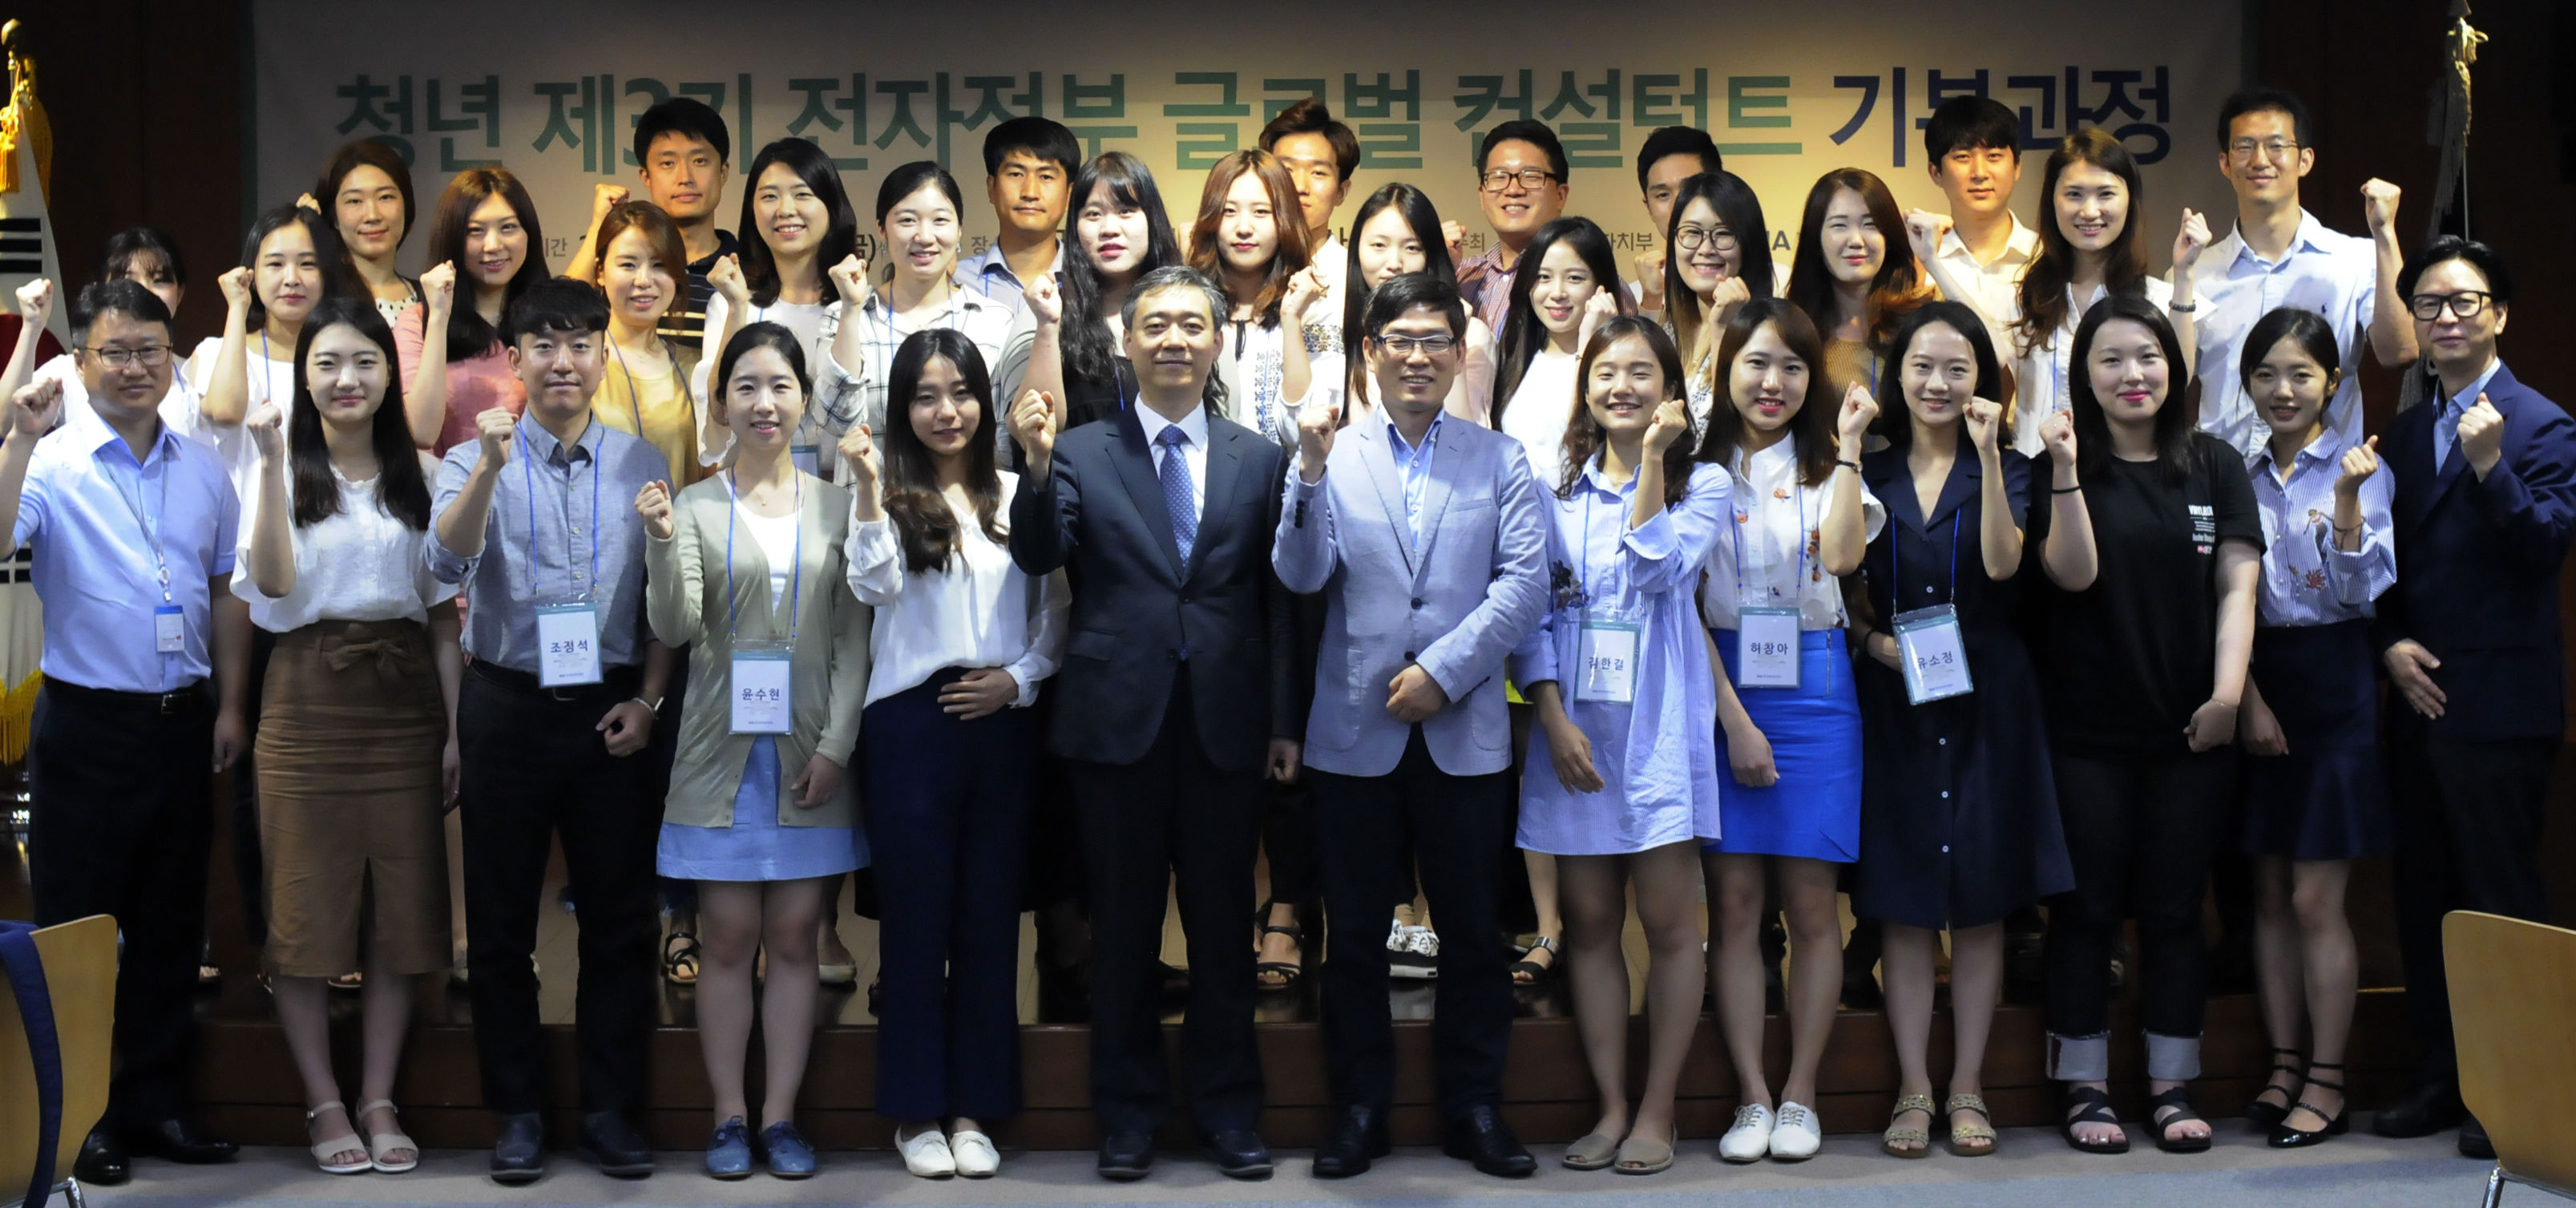 '2017년 전자정부 글로벌 청년 컨설턴트 양성과정’ 개최